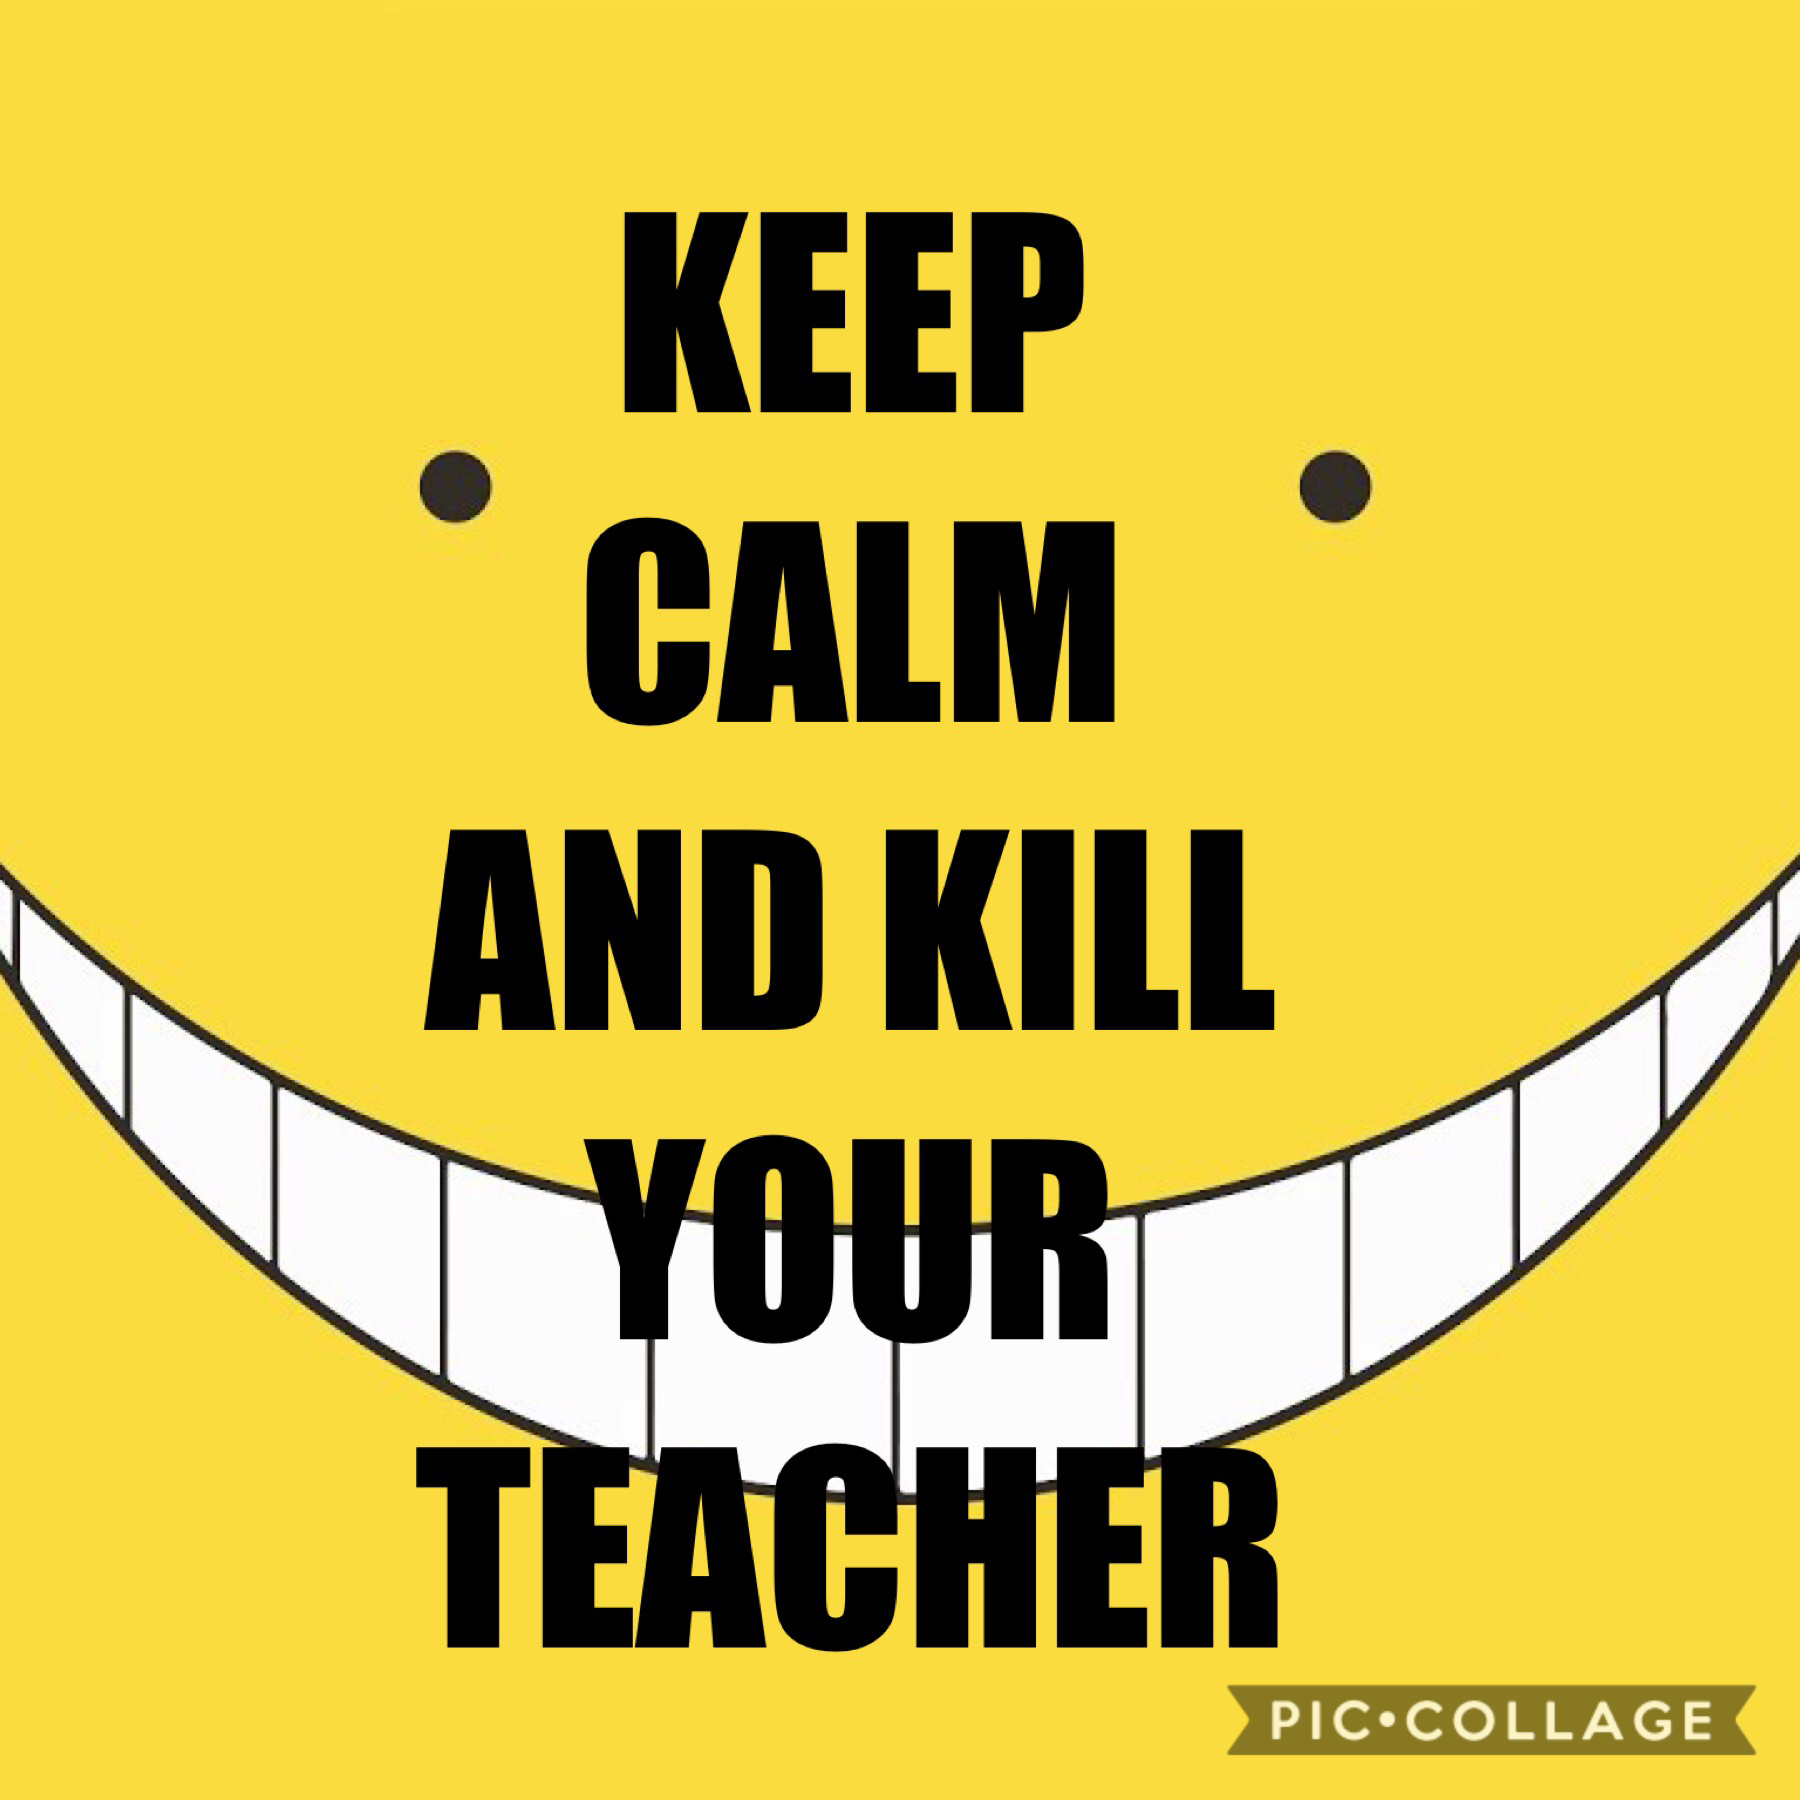 KEEP CALM AND KILL YOUR TEACHER!